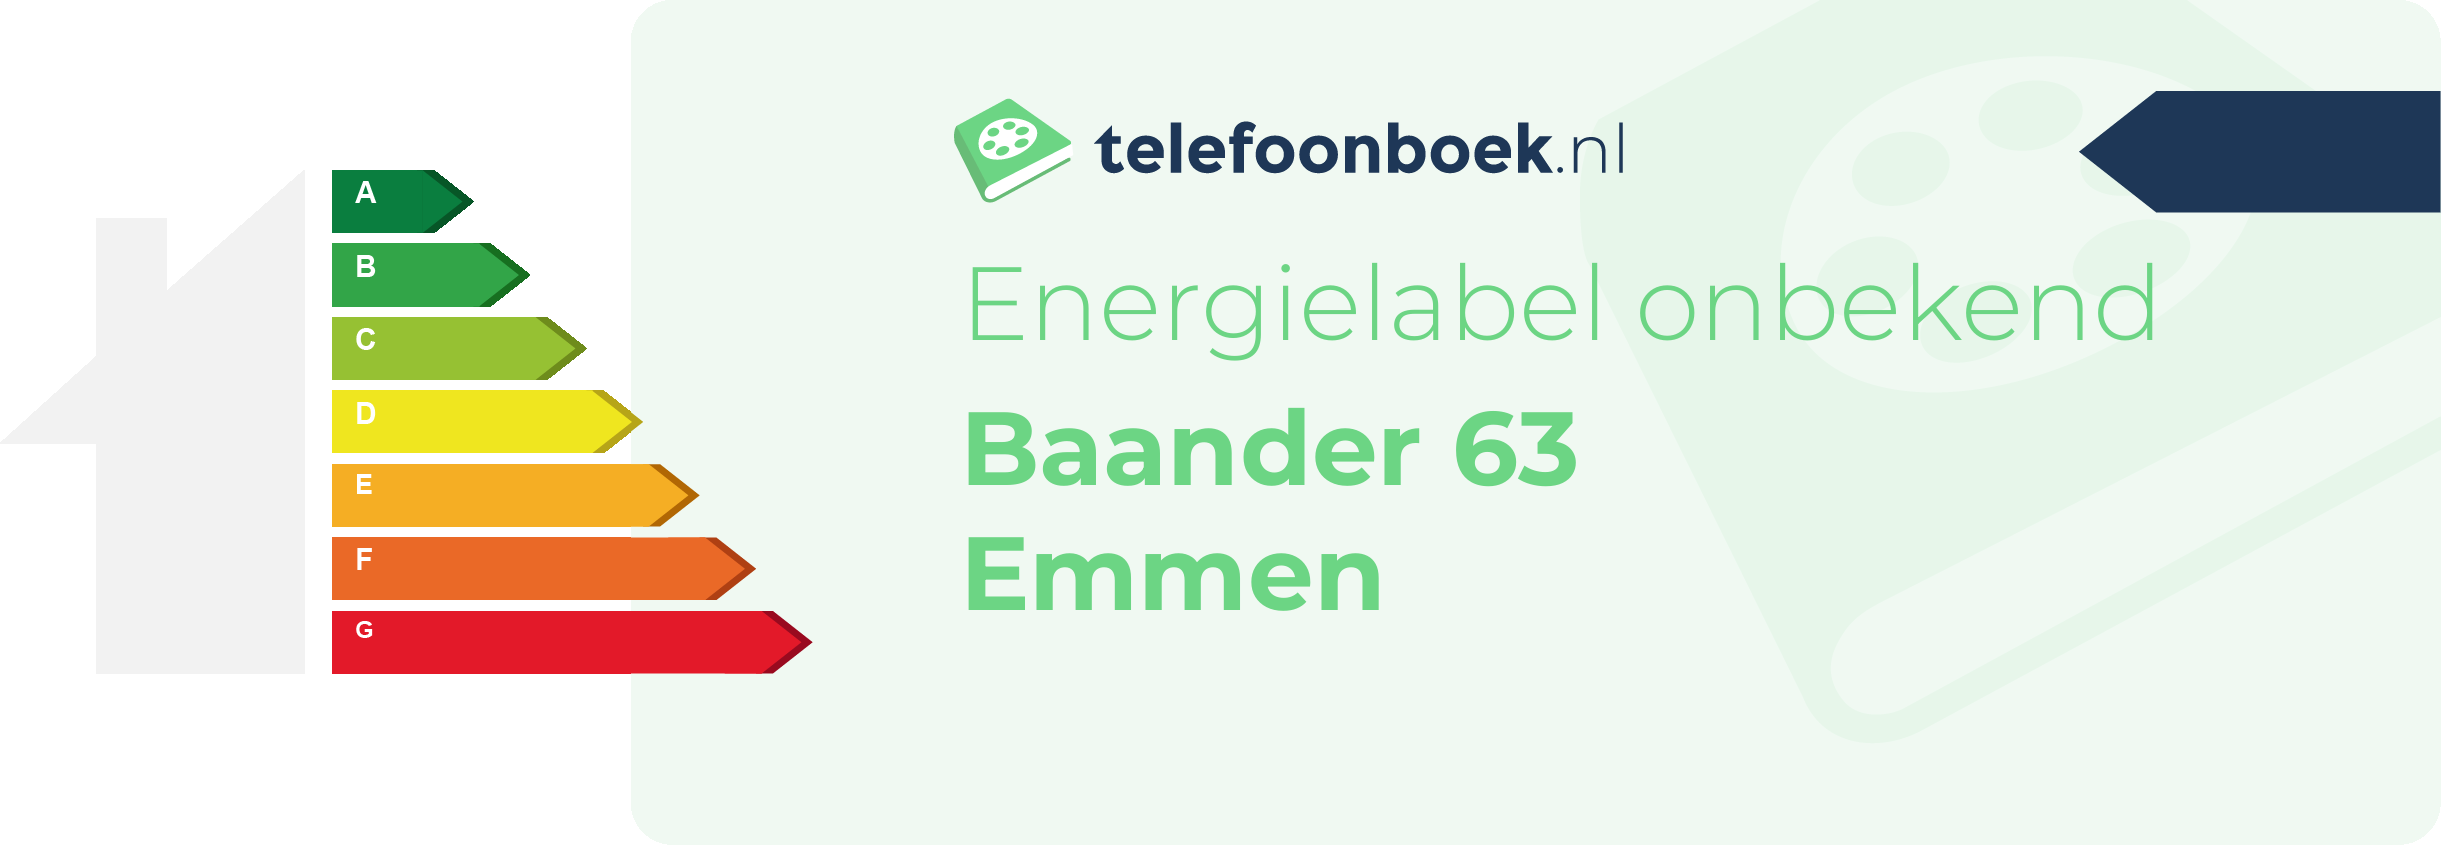 Energielabel Baander 63 Emmen